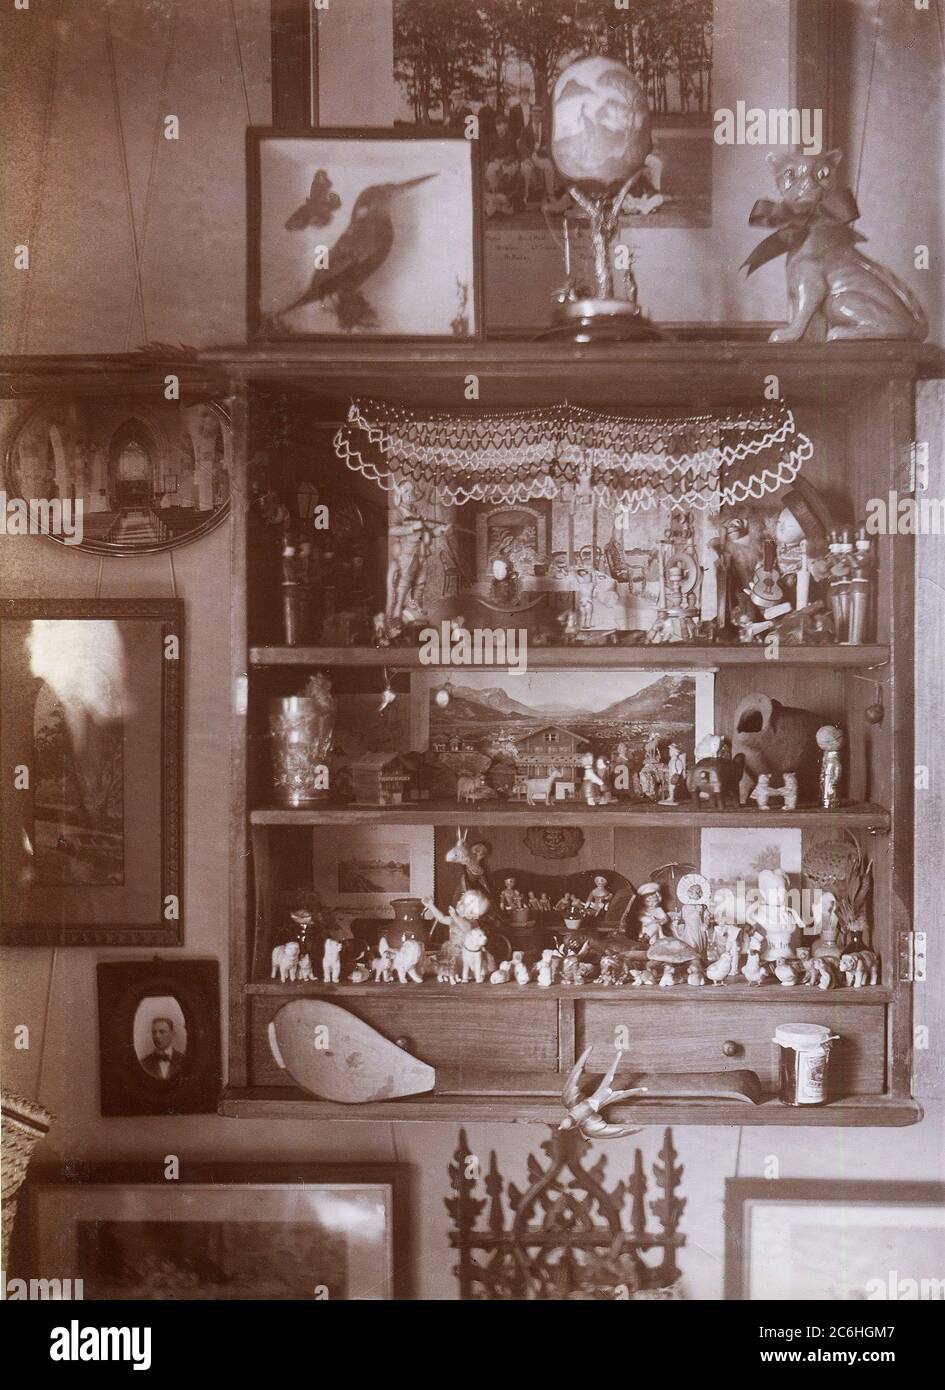 England. Mai 1901. Ein interessanter Schmuck- und Ausstellungsschrank. Auf den Regalen ist ein vielseitiges Sortiment an Artikeln angeordnet. Stockfoto